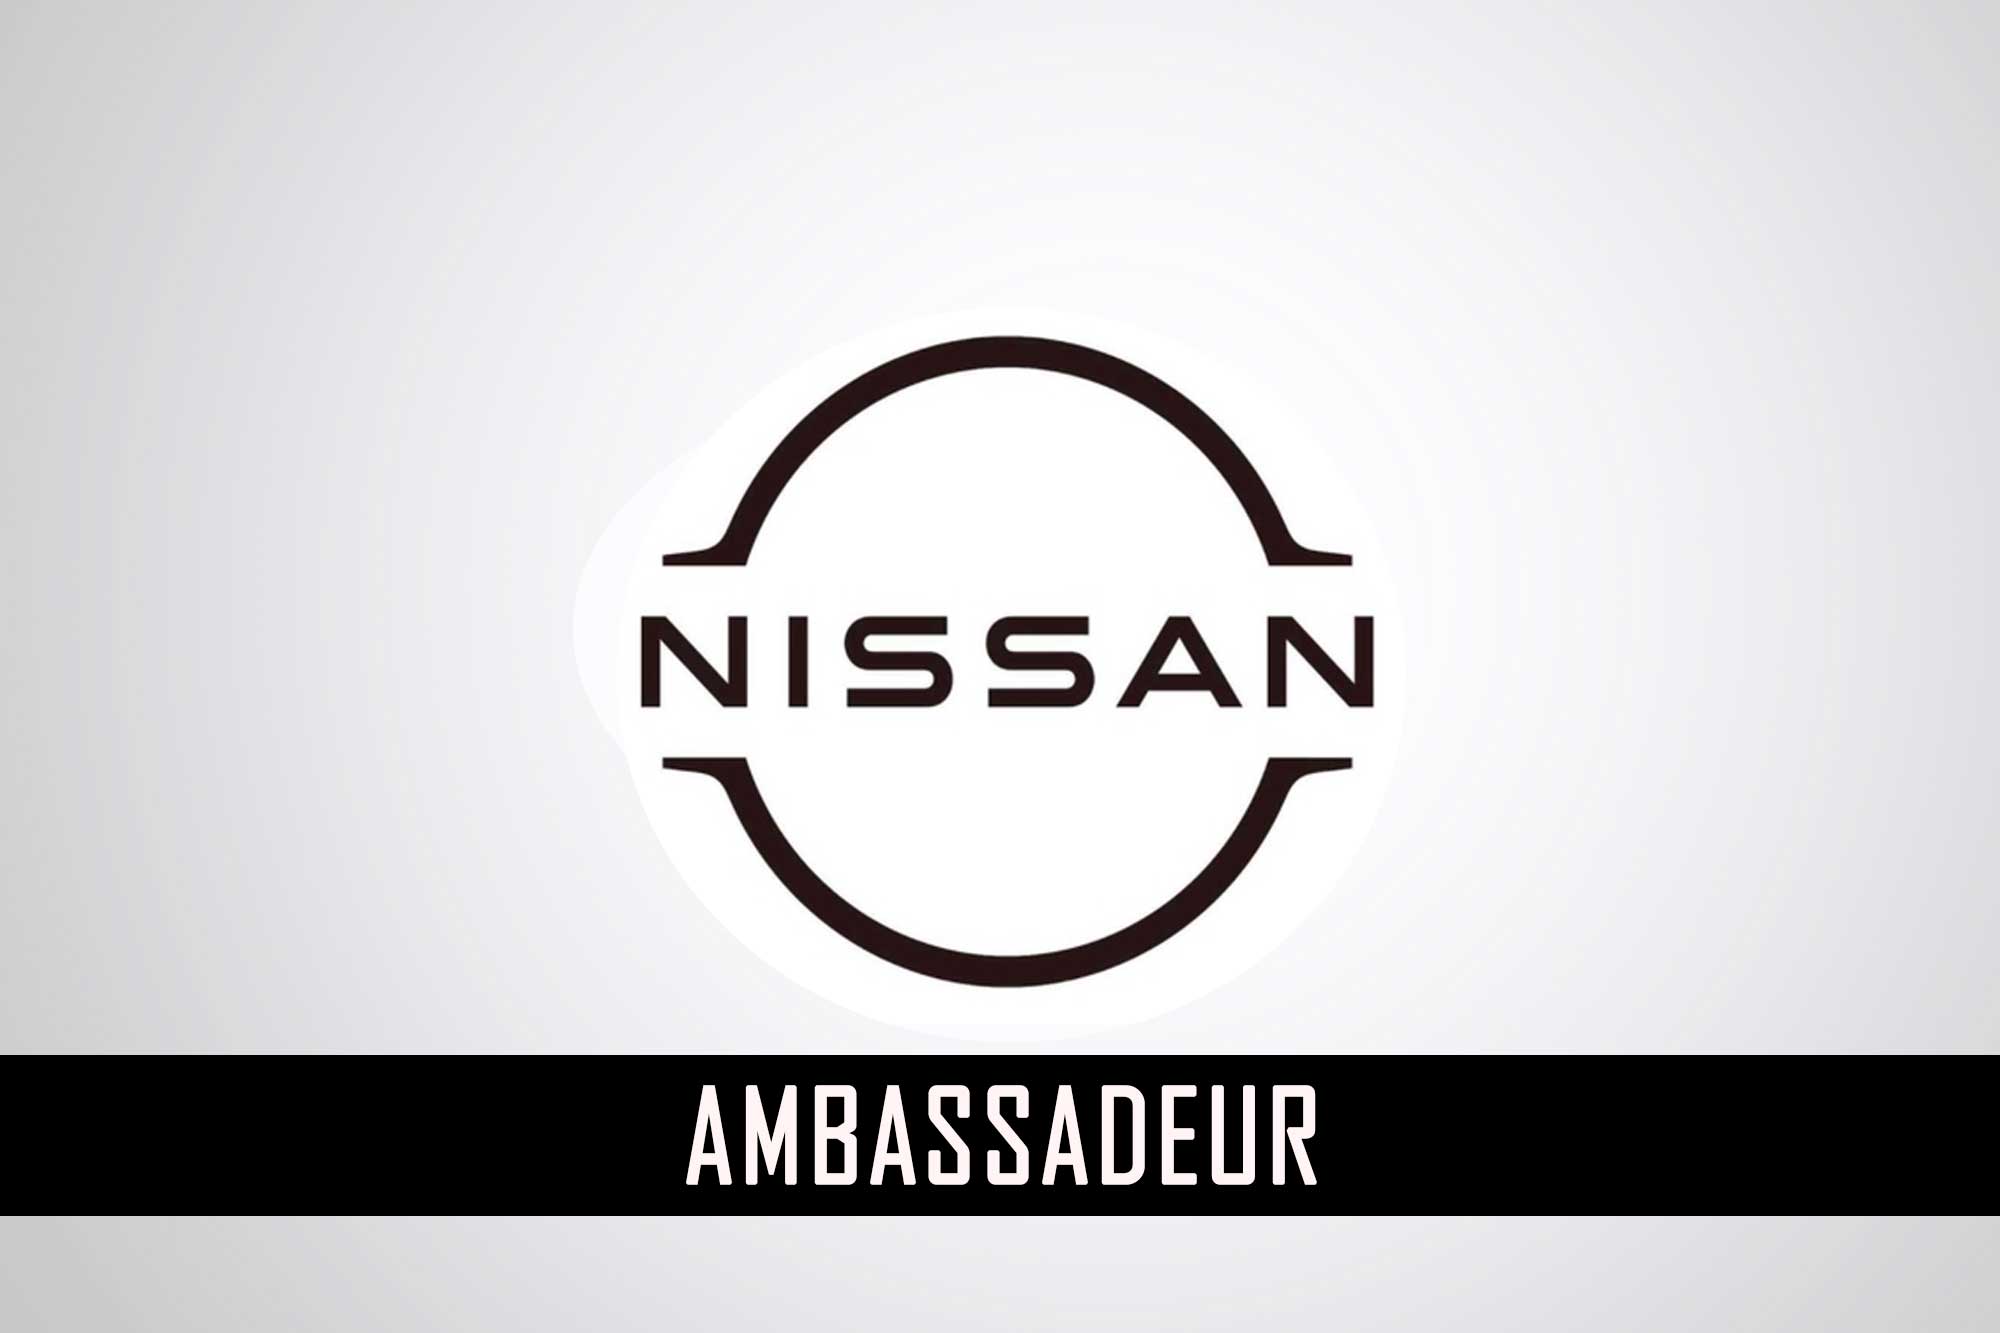 ambassadeur nissan